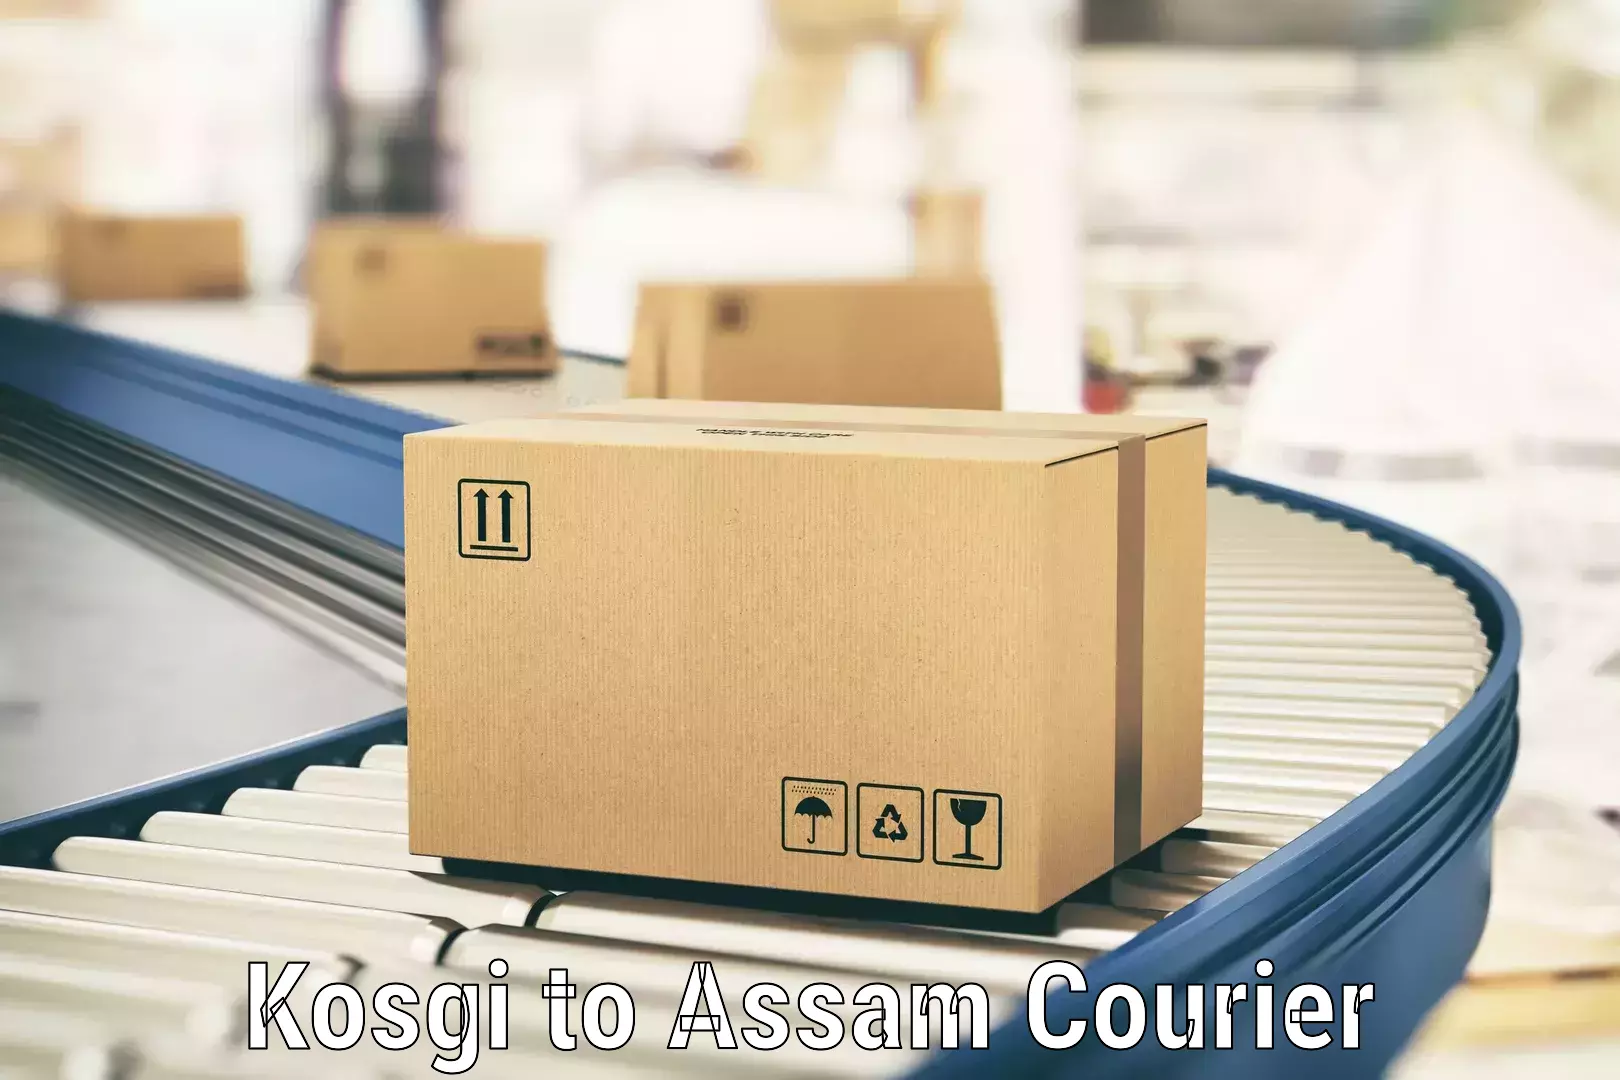 Courier service comparison Kosgi to Bijni